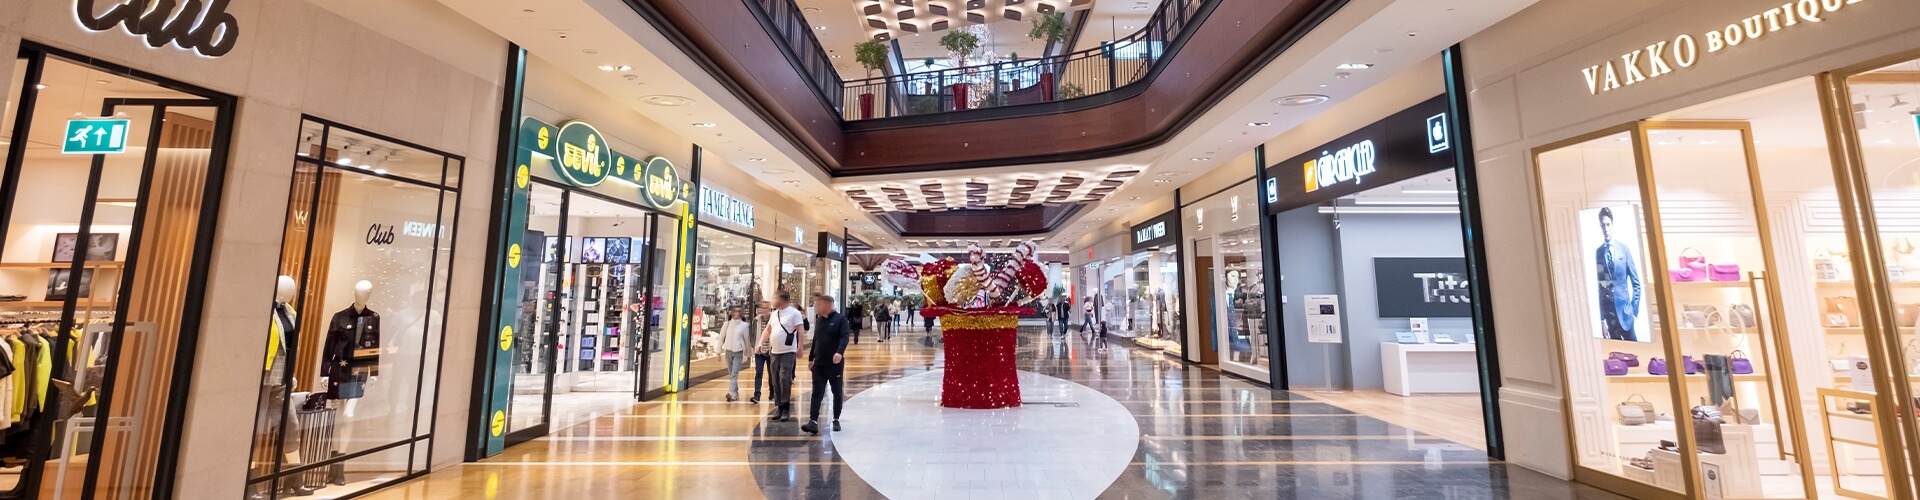 İzmir Optimum Alışveriş Merkezi - Hizmetler